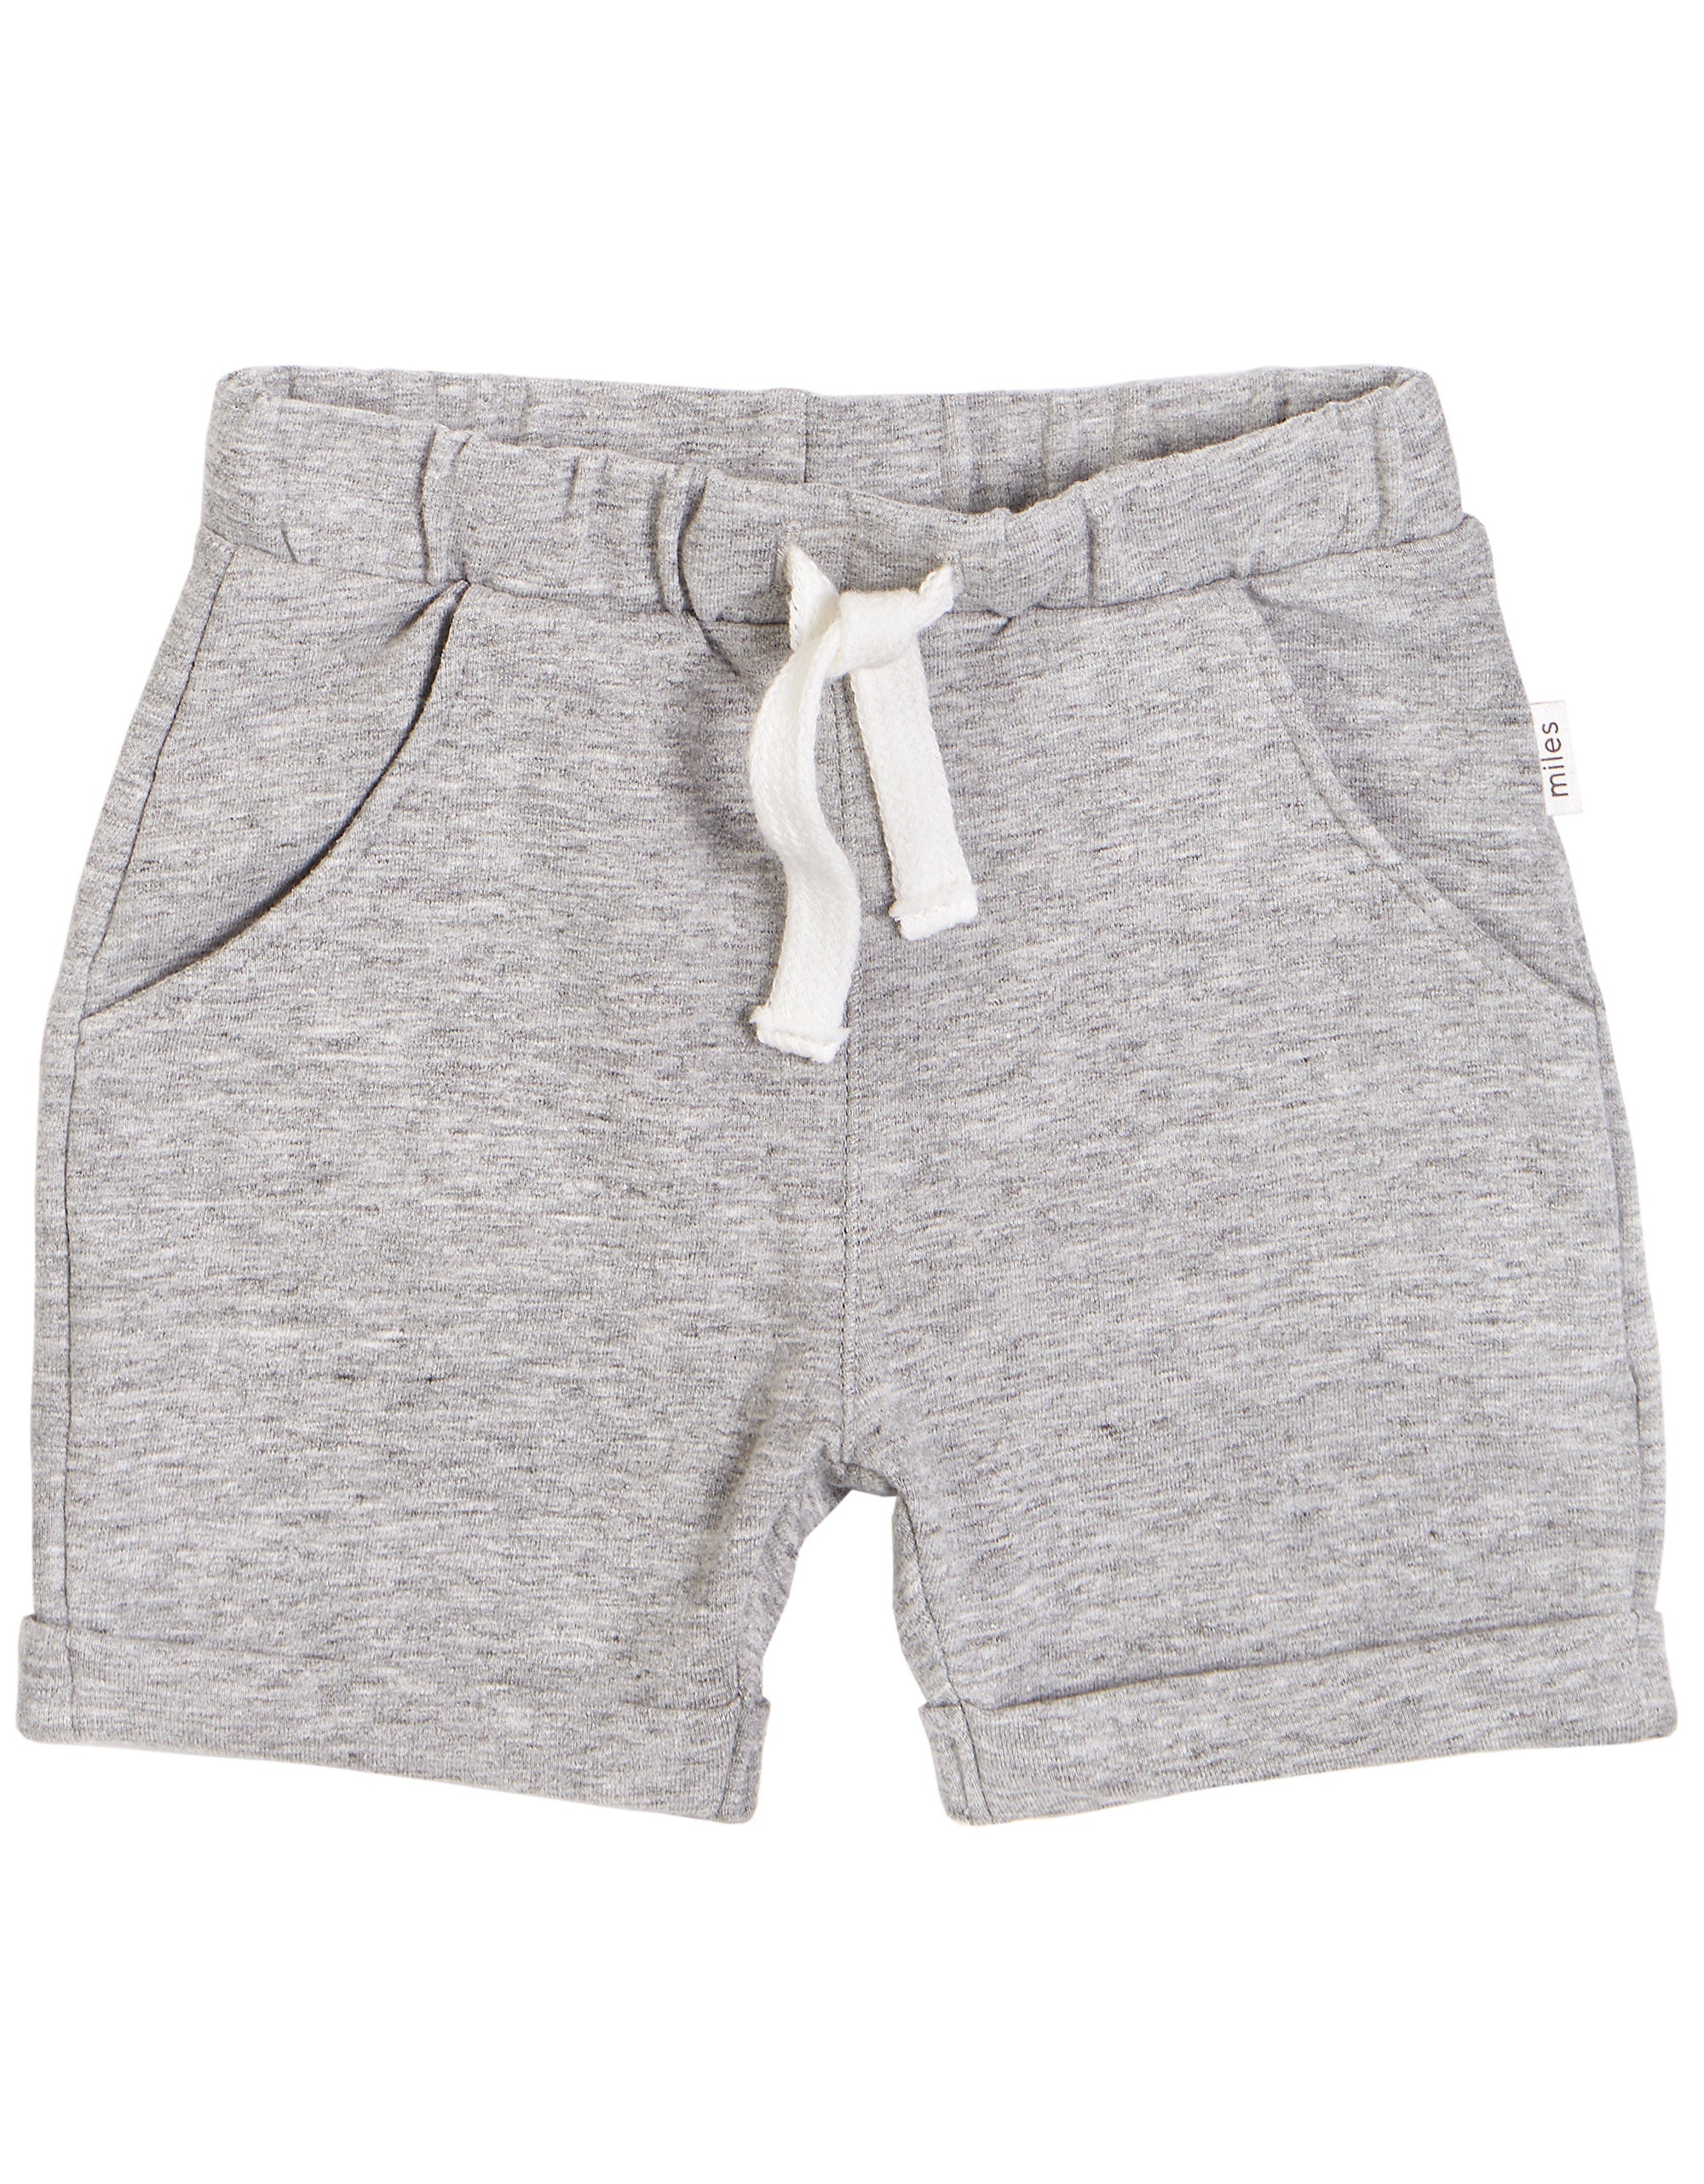 heather gray knit shorts